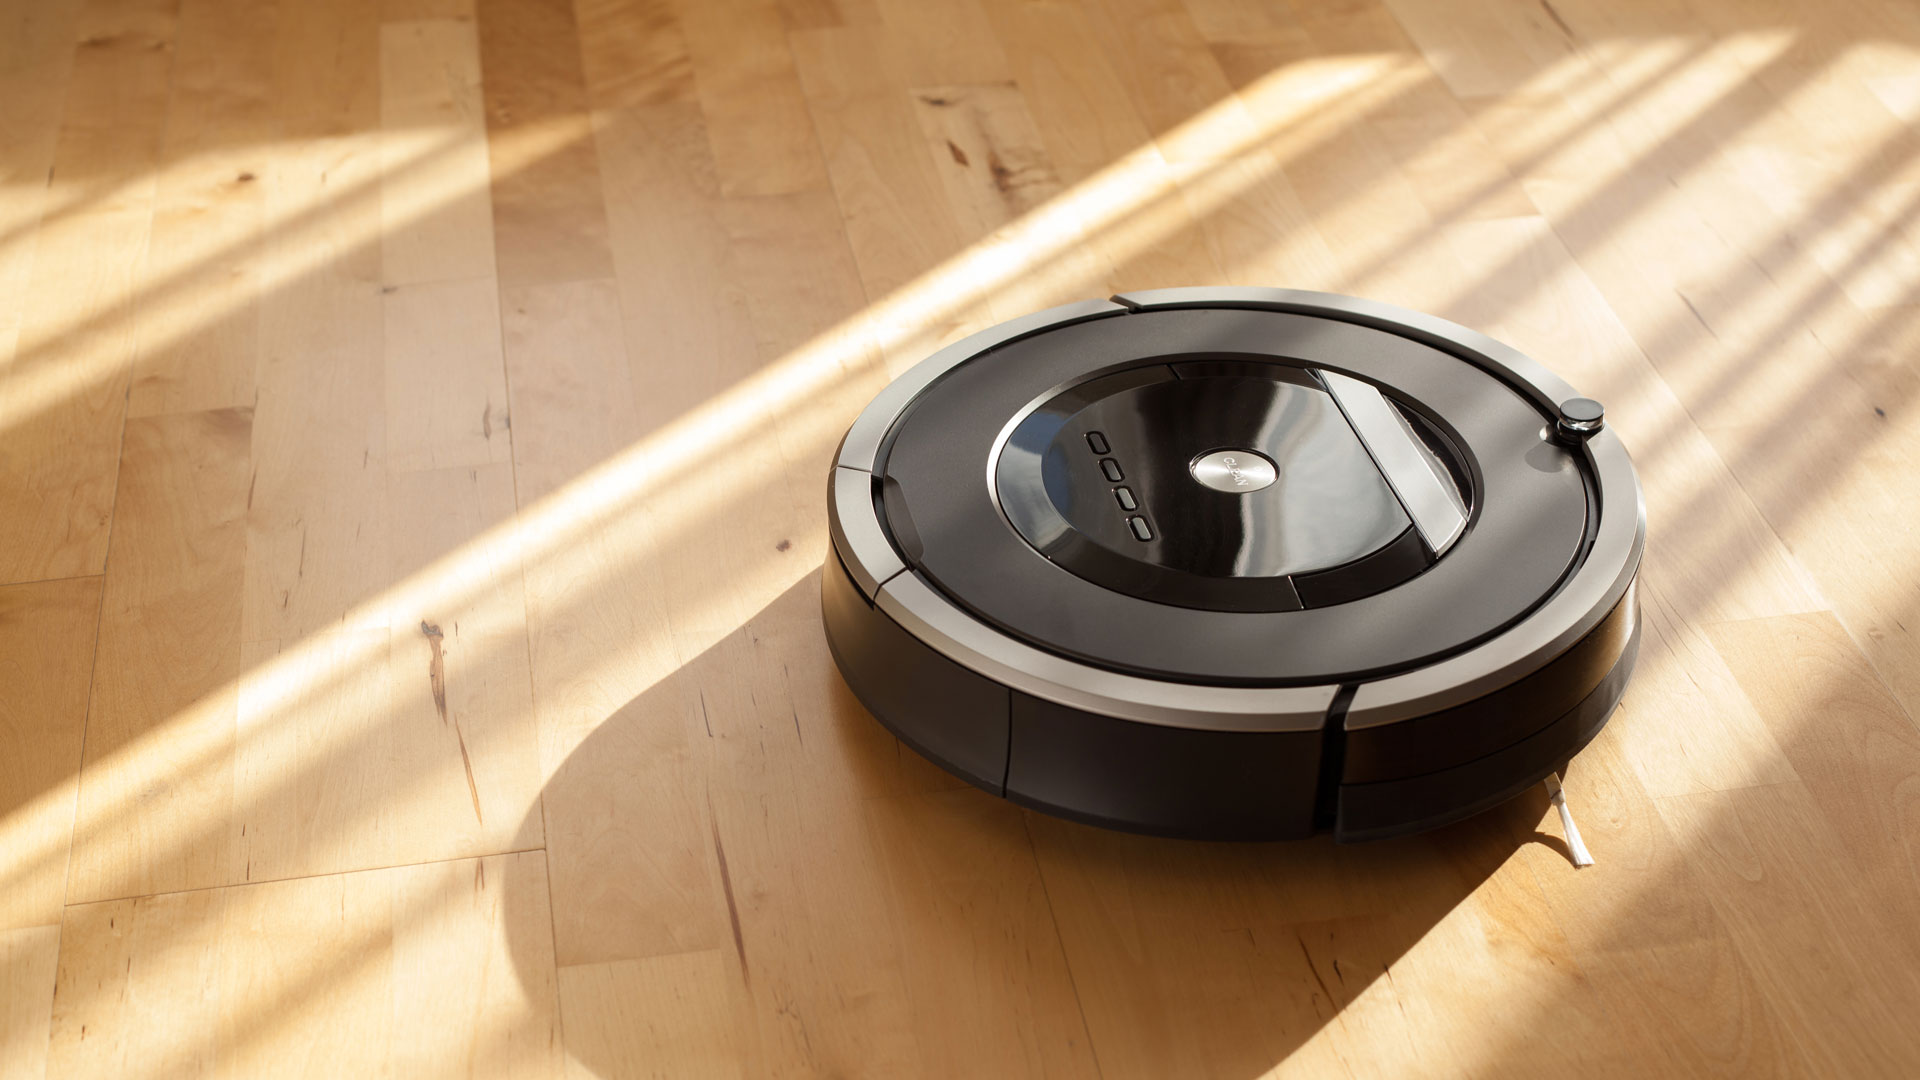 Best Robot Vacuums 2021 Top Ten Reviews, Best Robot Vacuum Cleaner For Hardwood Floors